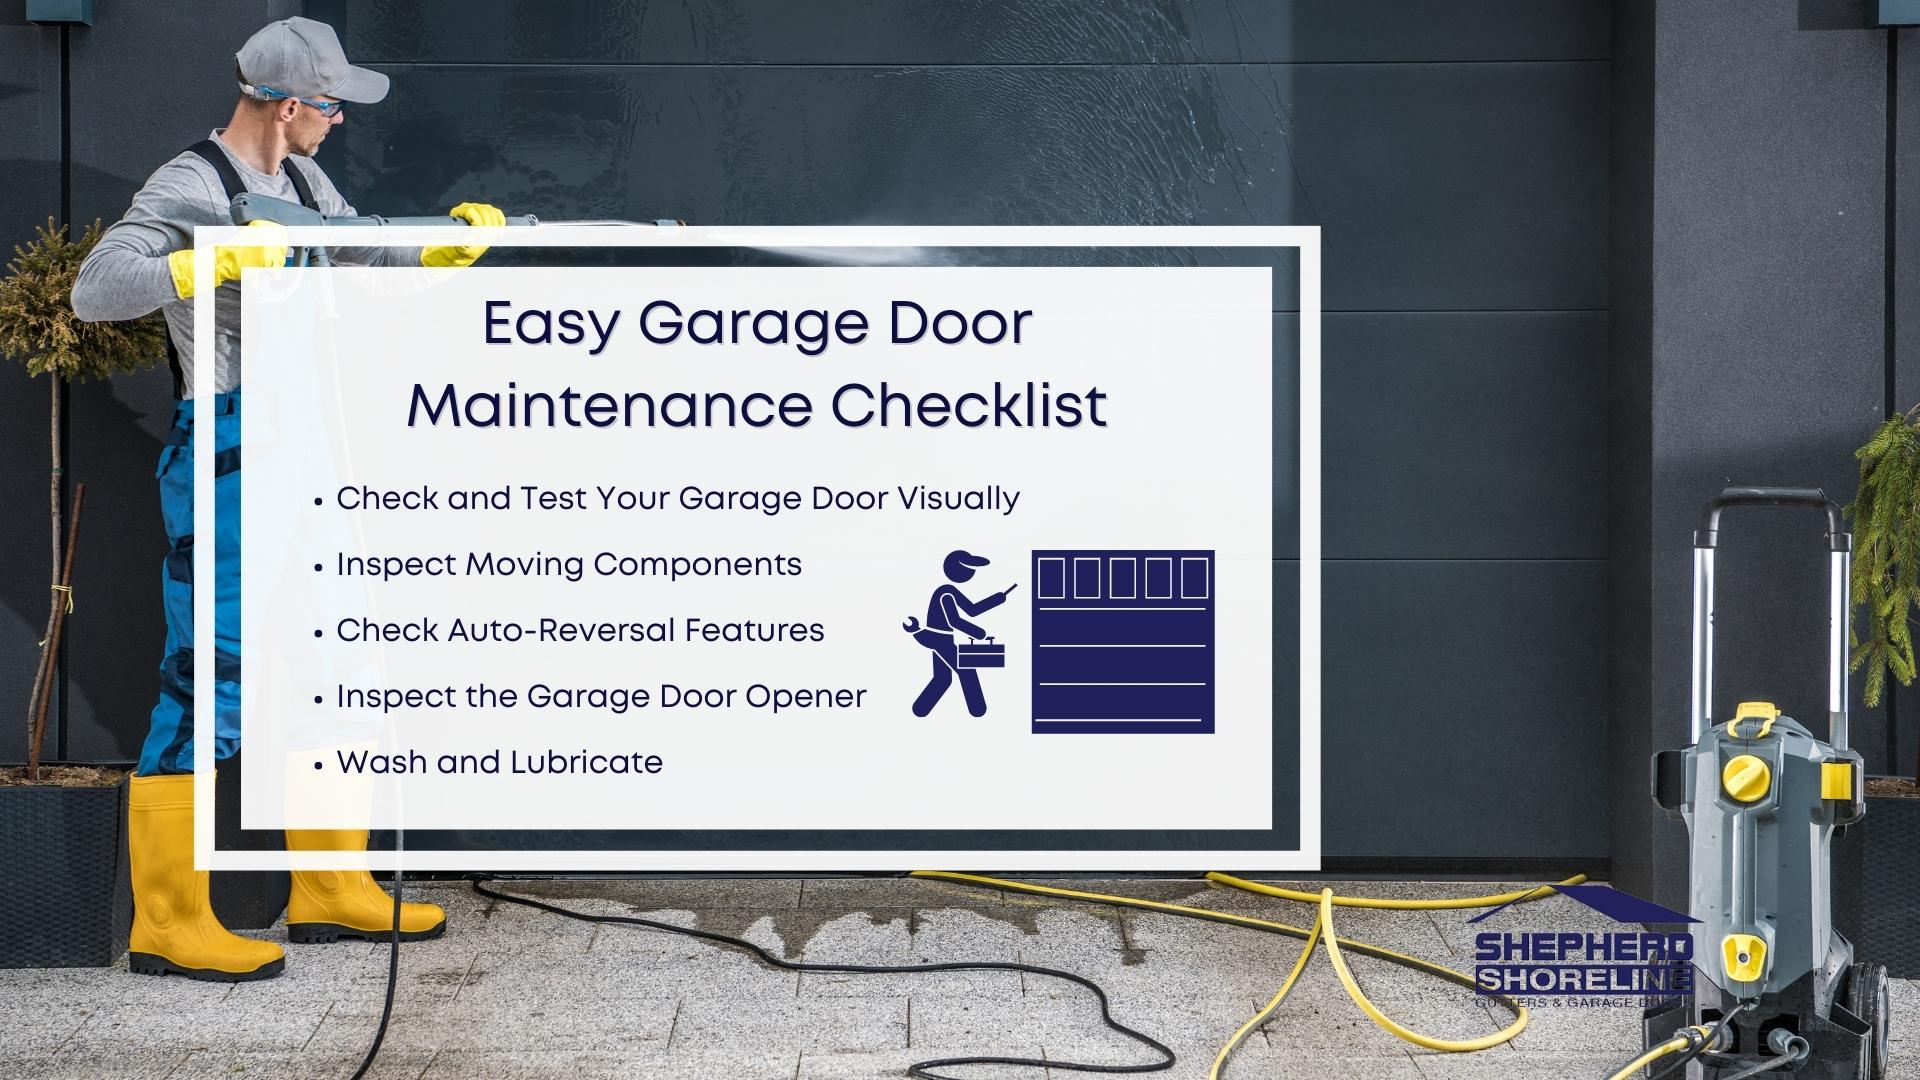 Infographic image of easy garage door maintenance checklist